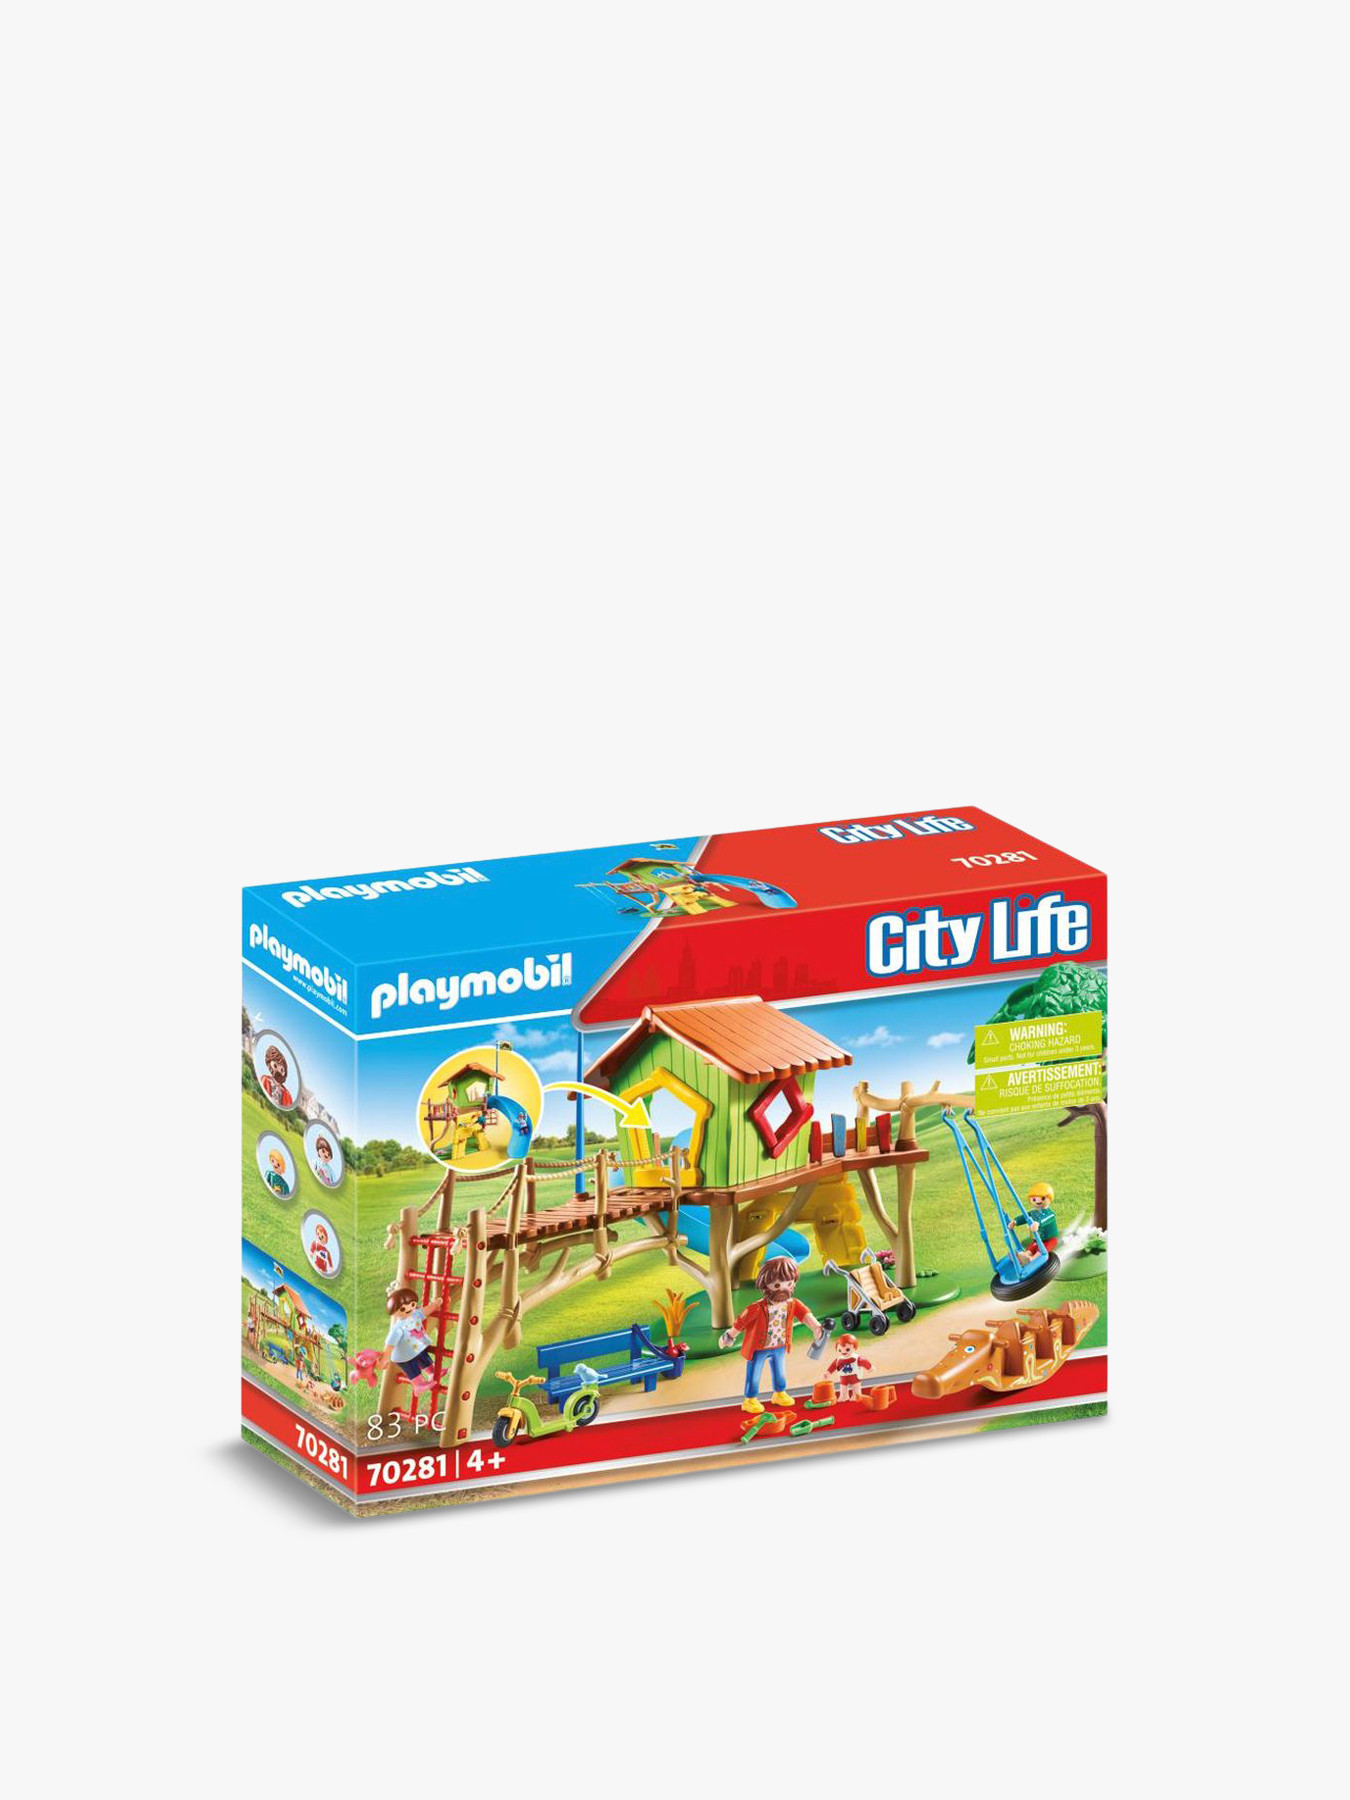 PLAYMOBIL 70281 CITY LIFE PLAYGROUND & CHILDREN